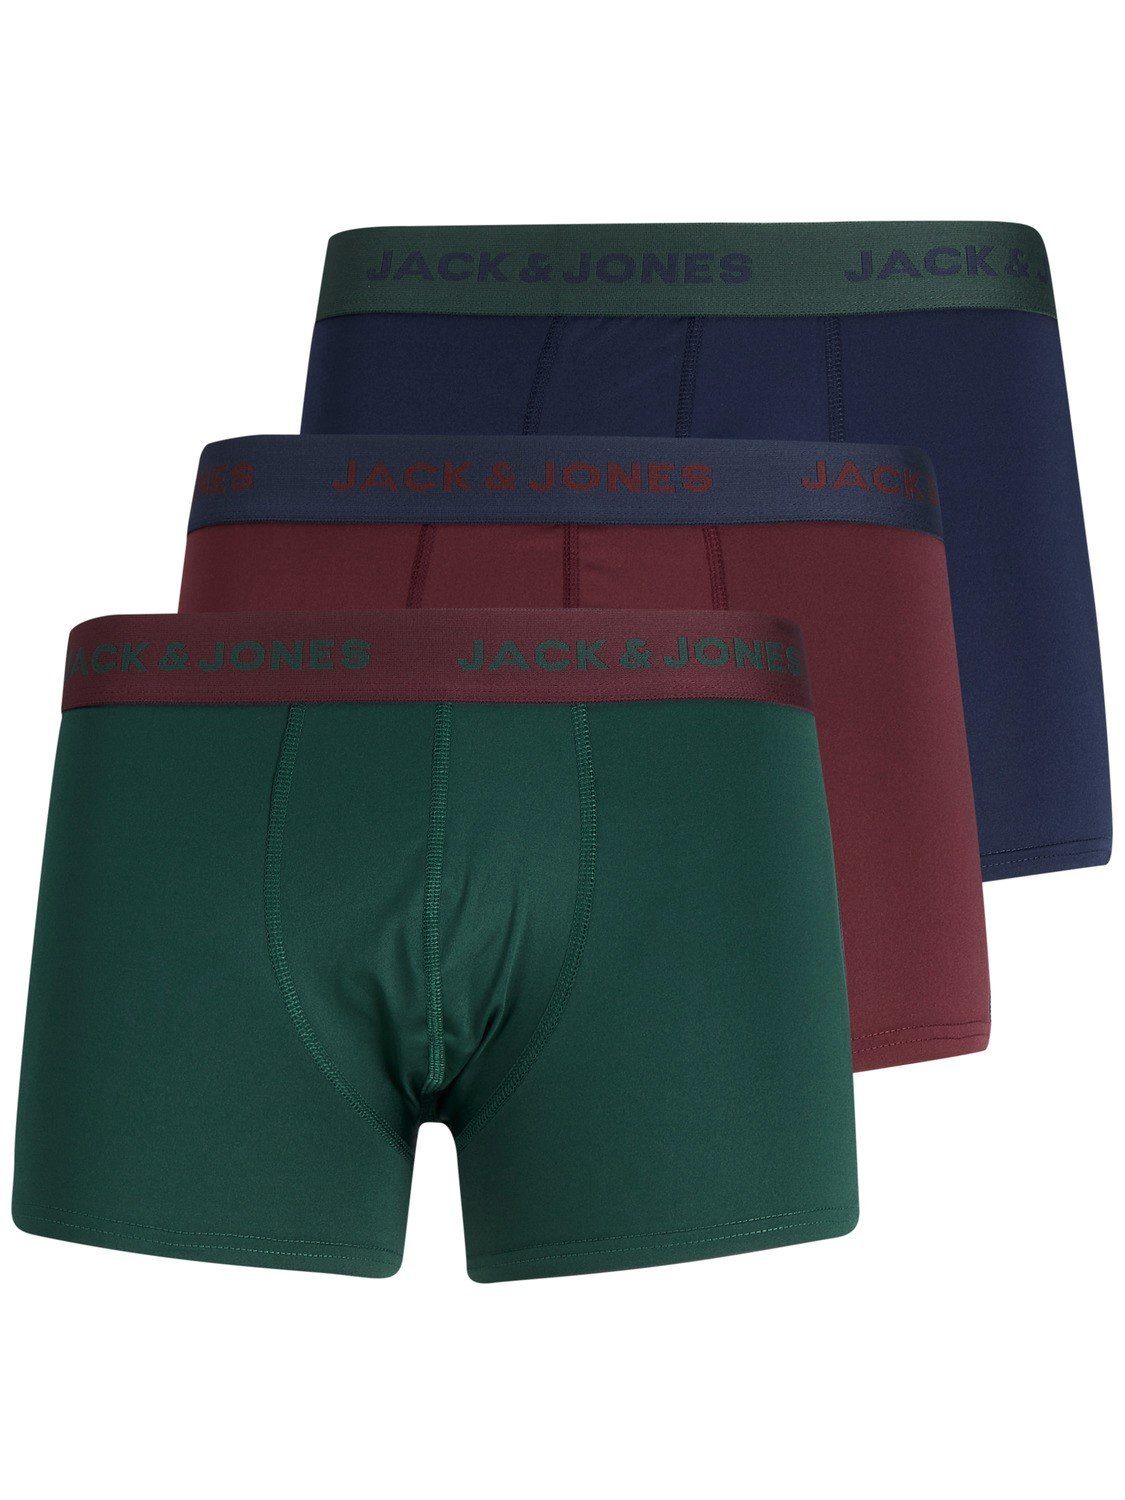 Pierre Cardin Unterhosen für Herren online kaufen | OTTO